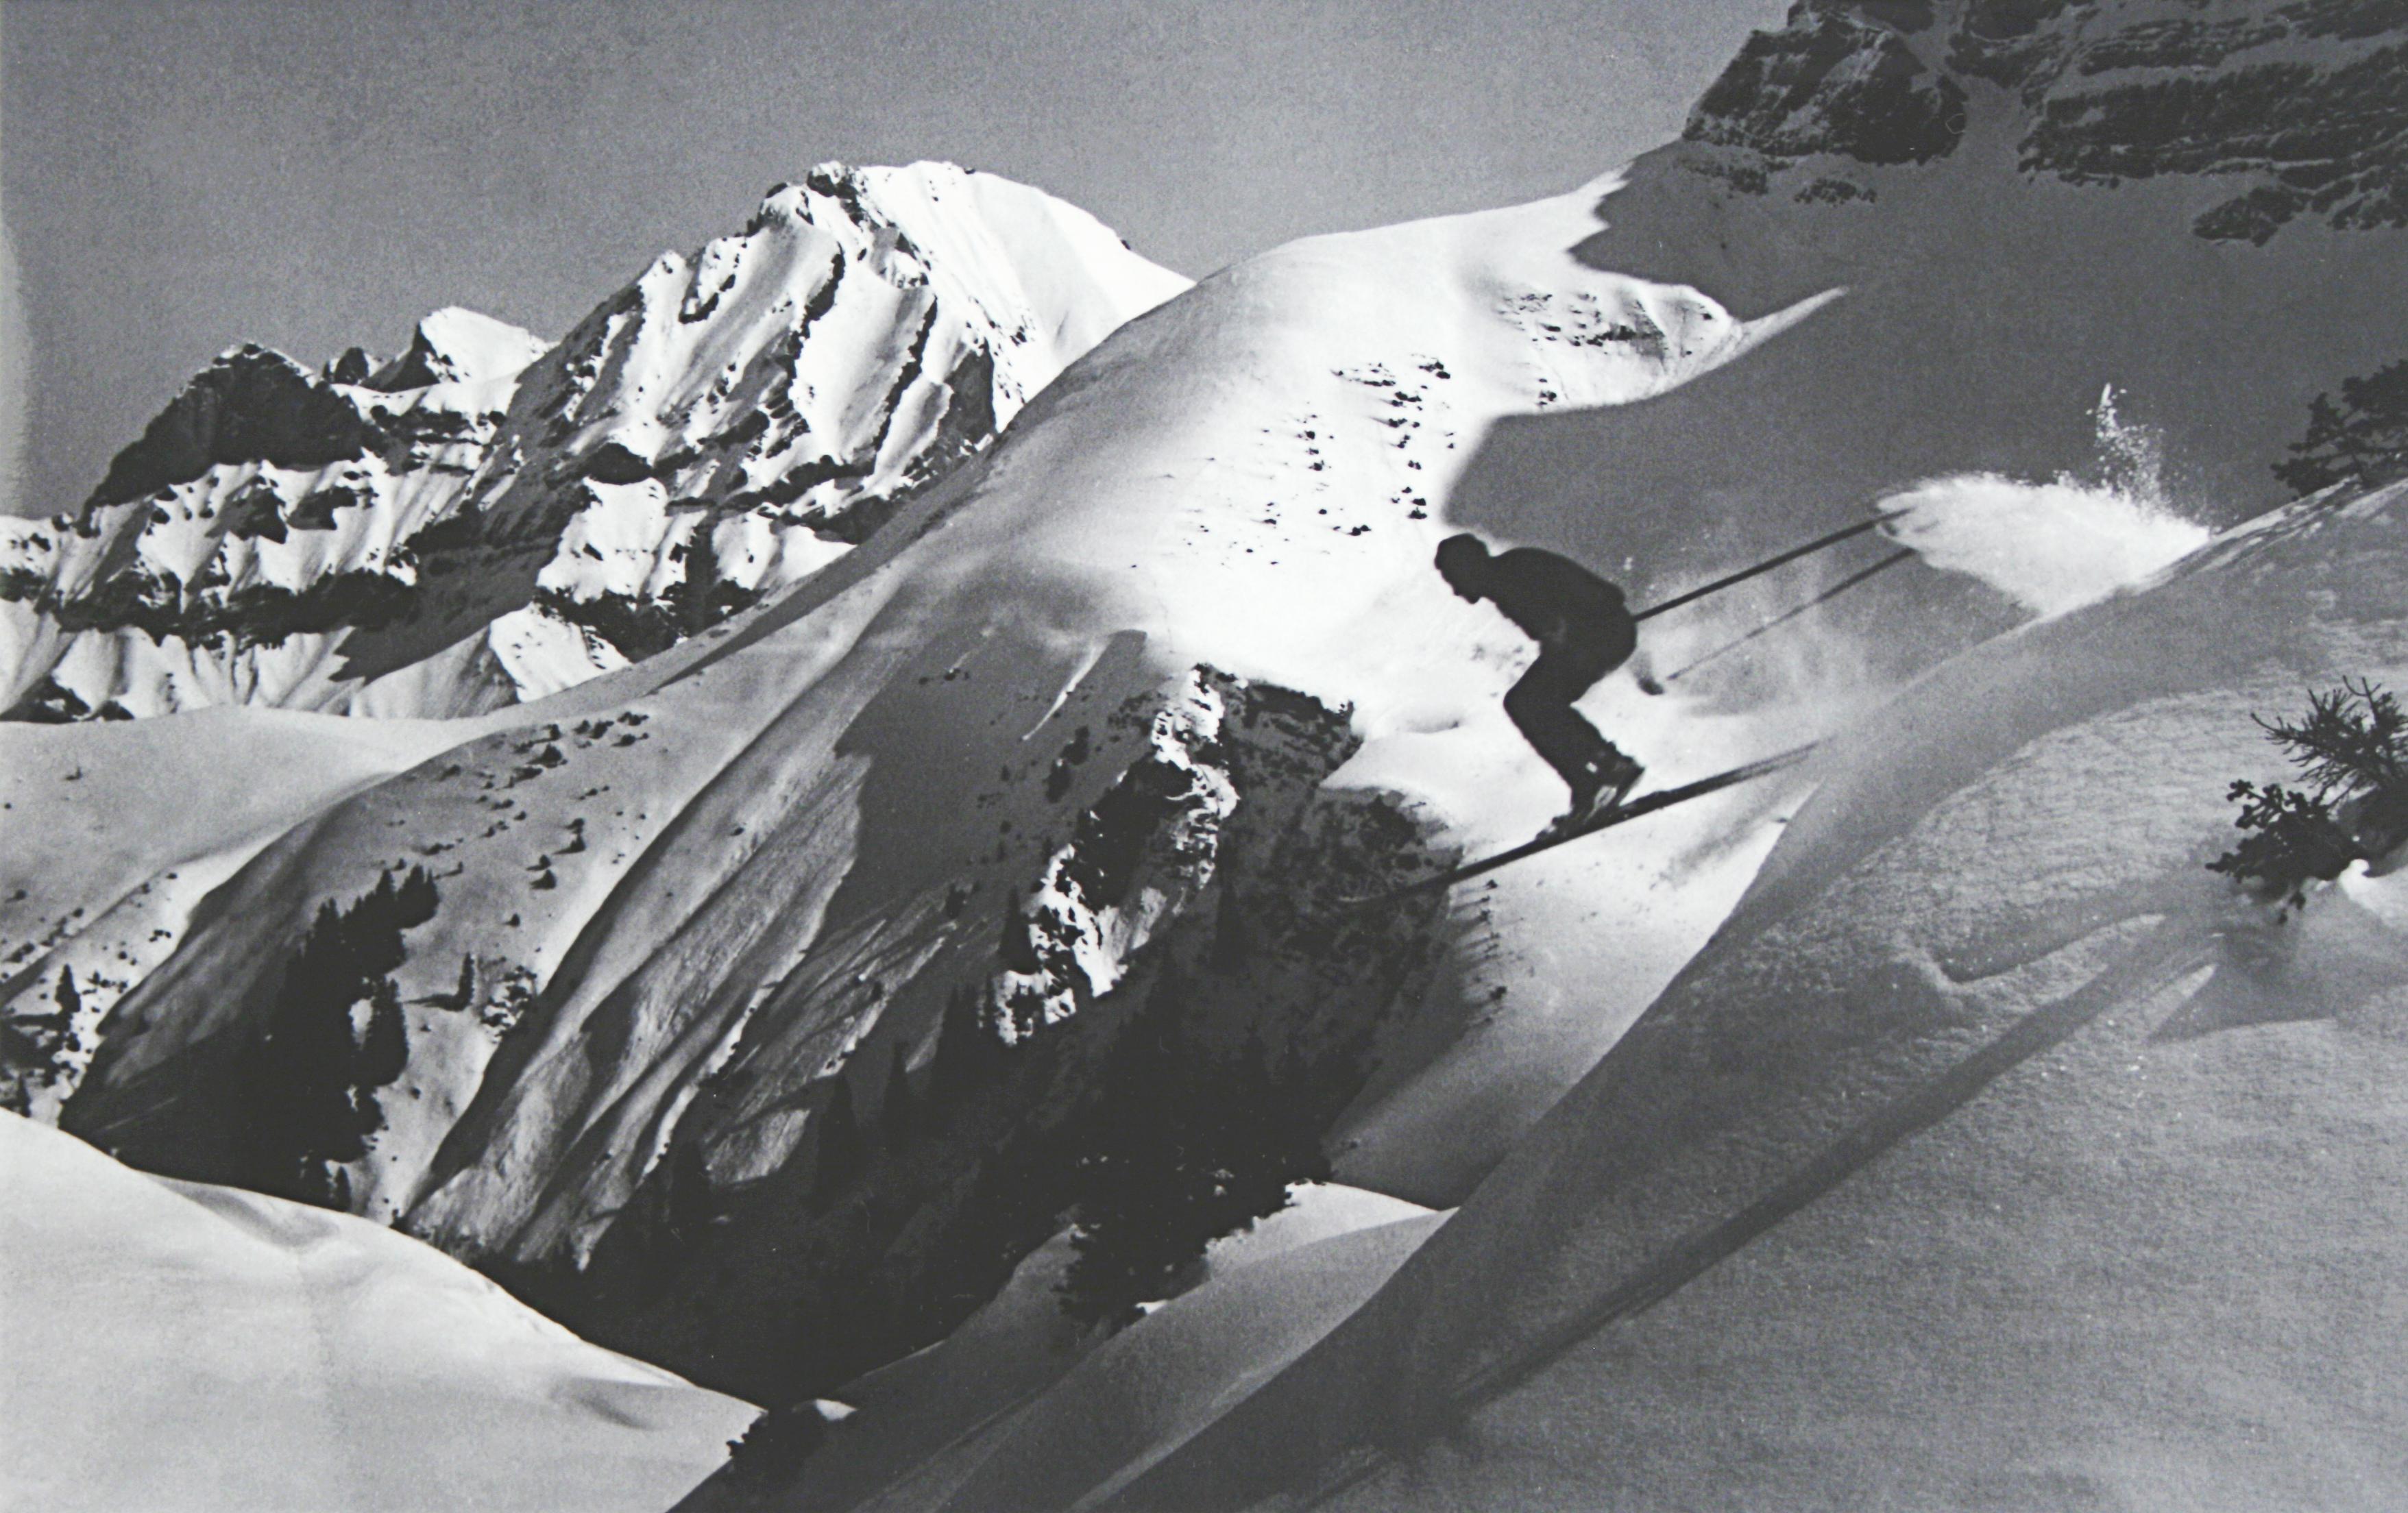 Vintage, Ski Alpin Foto.
tHE JUMP